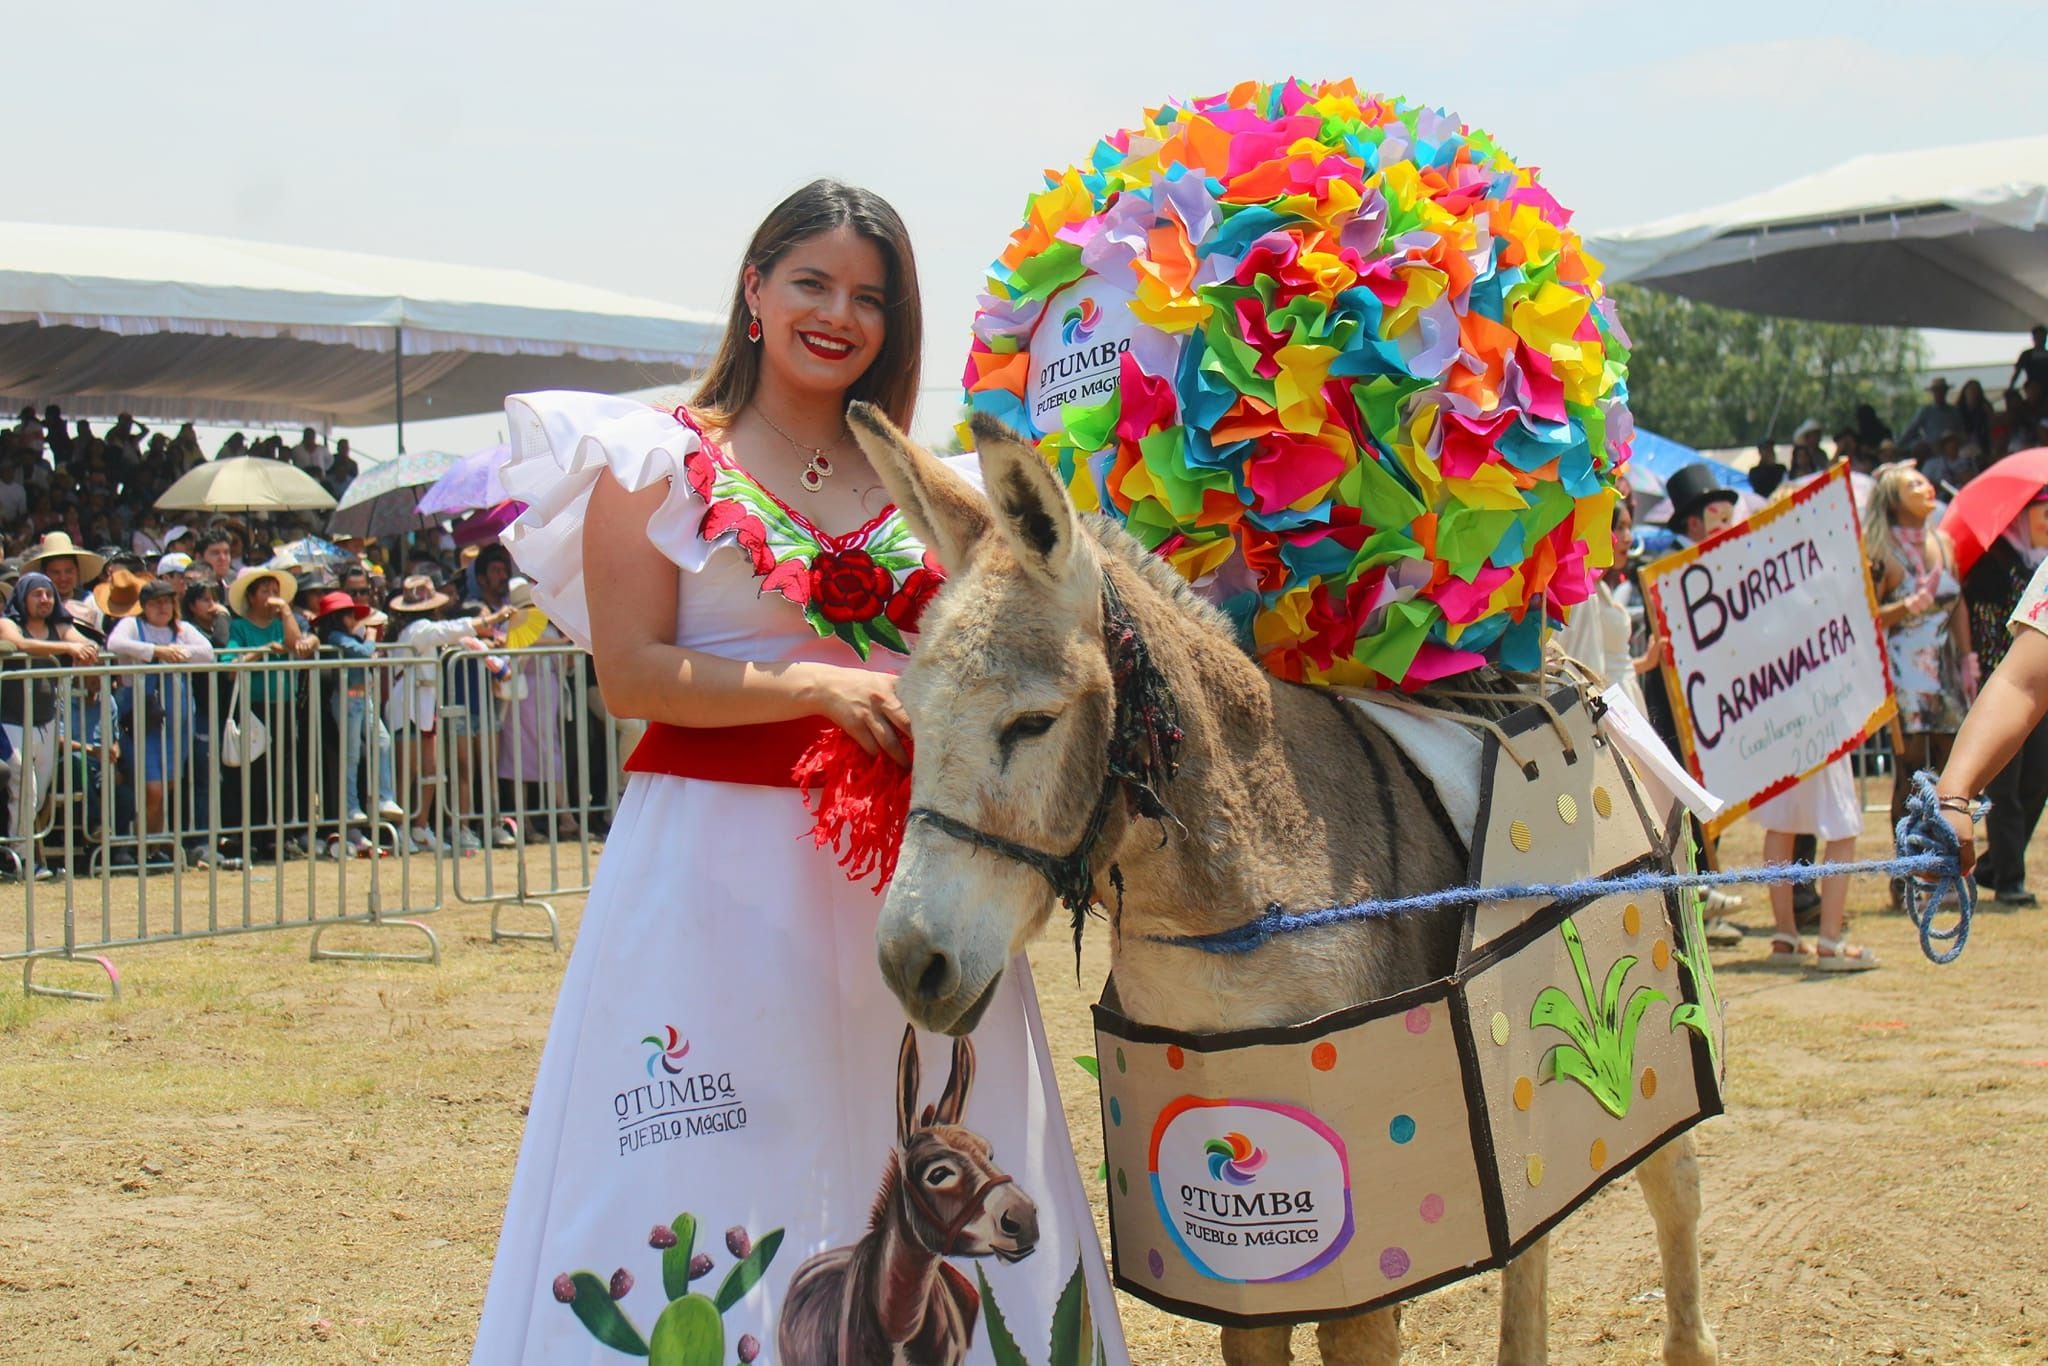 Dueños disfrazaron a sus burros inspirados en diferentes temáticas. (Facebook/Feria Nacional del Burro Otumba 2024)

Burros, equinos, feria nacional del burro 2024, Otumba, México, disfraces, polo, animales, mascotas